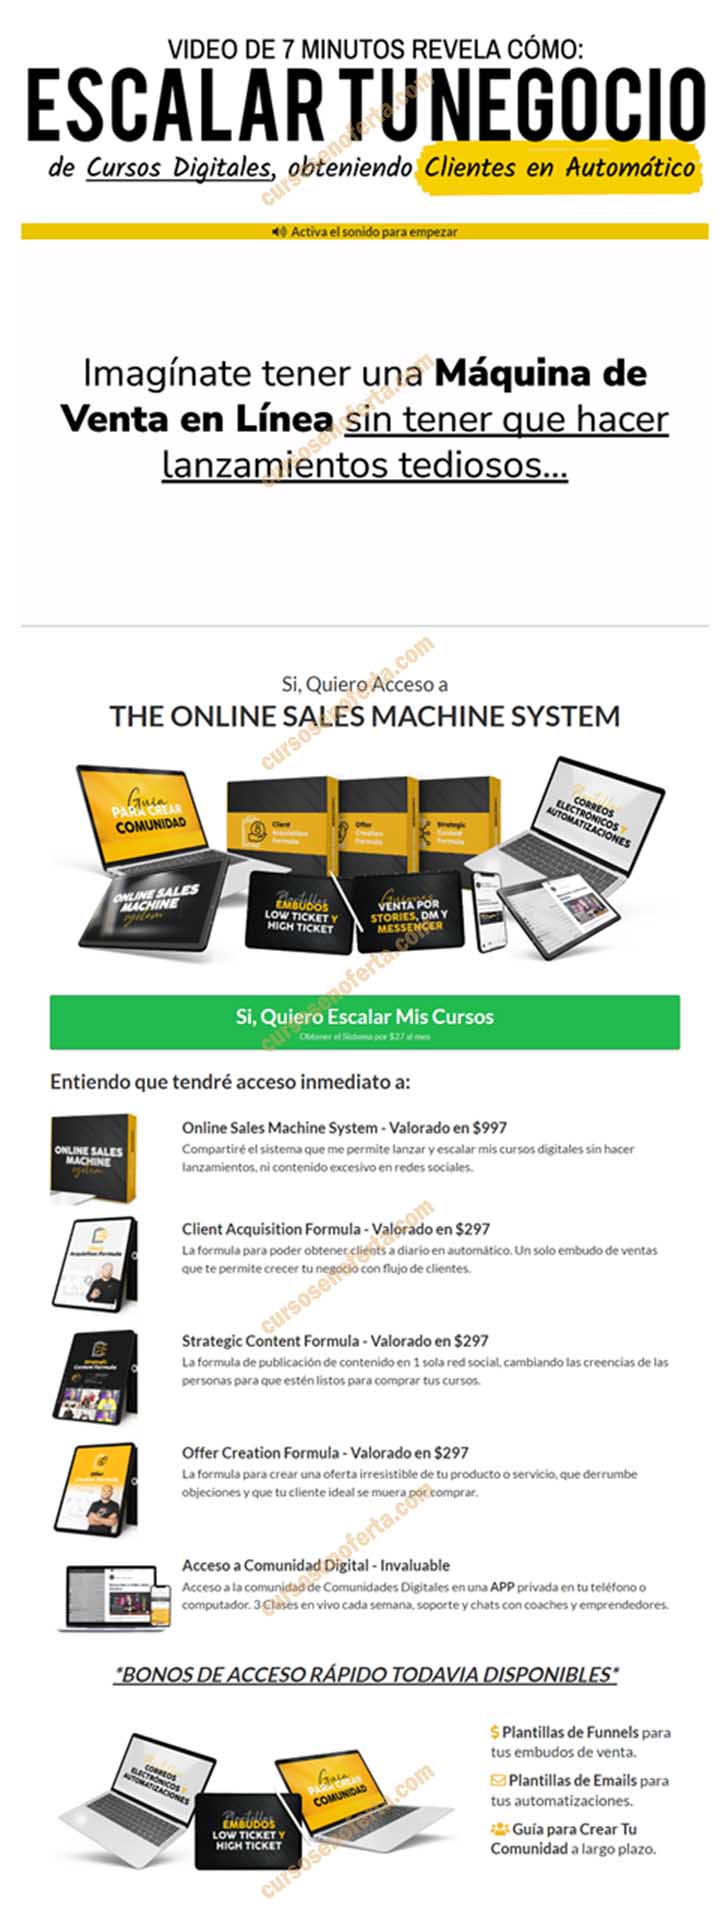 Online sales machine